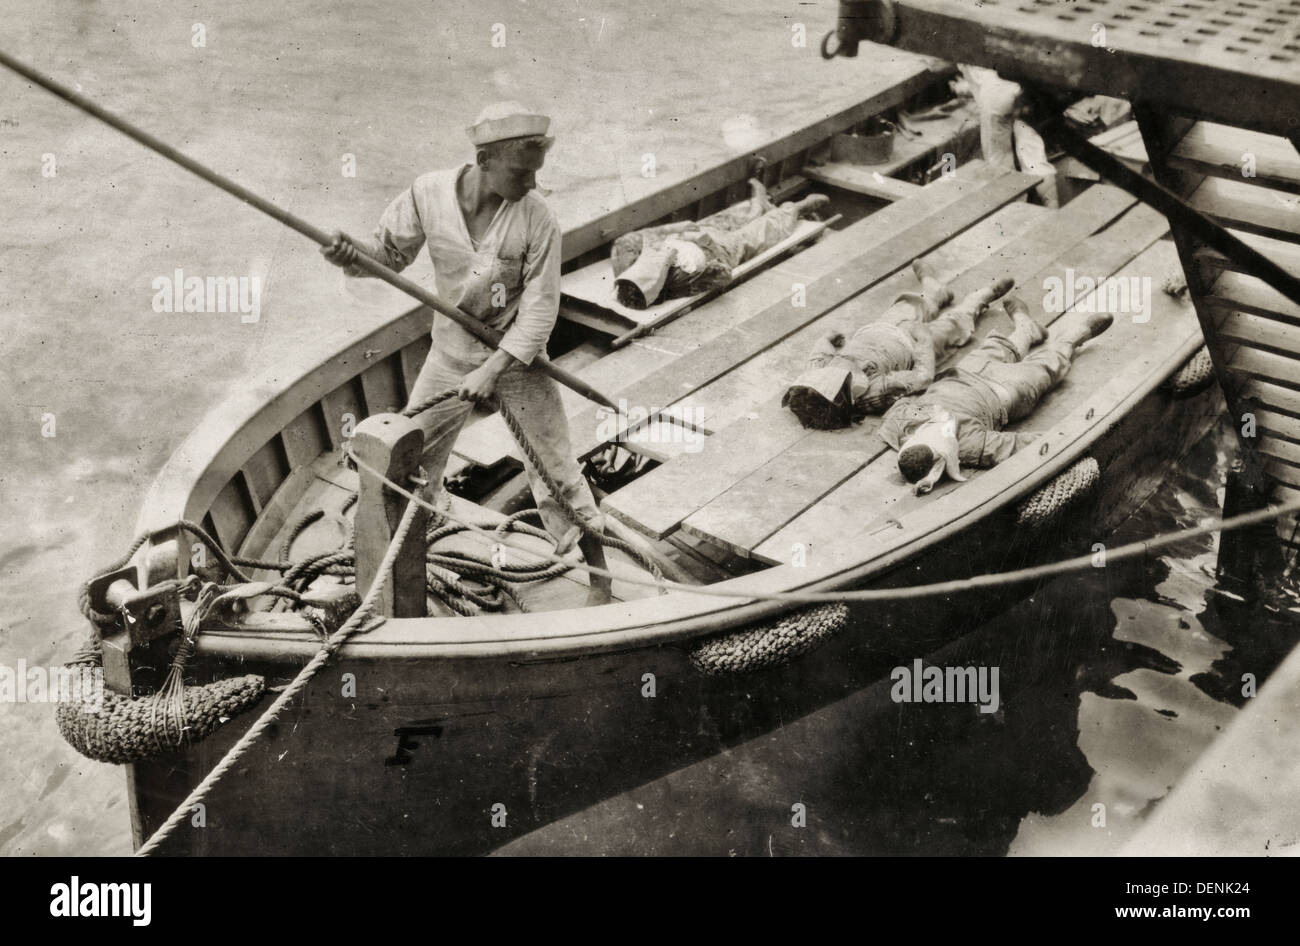 Bringen Körper der Toten Jackies zurück zur USS Vermont - Segler mit Leichen an U.S.S Vermont Boot festmachen. 1914 Stockfoto